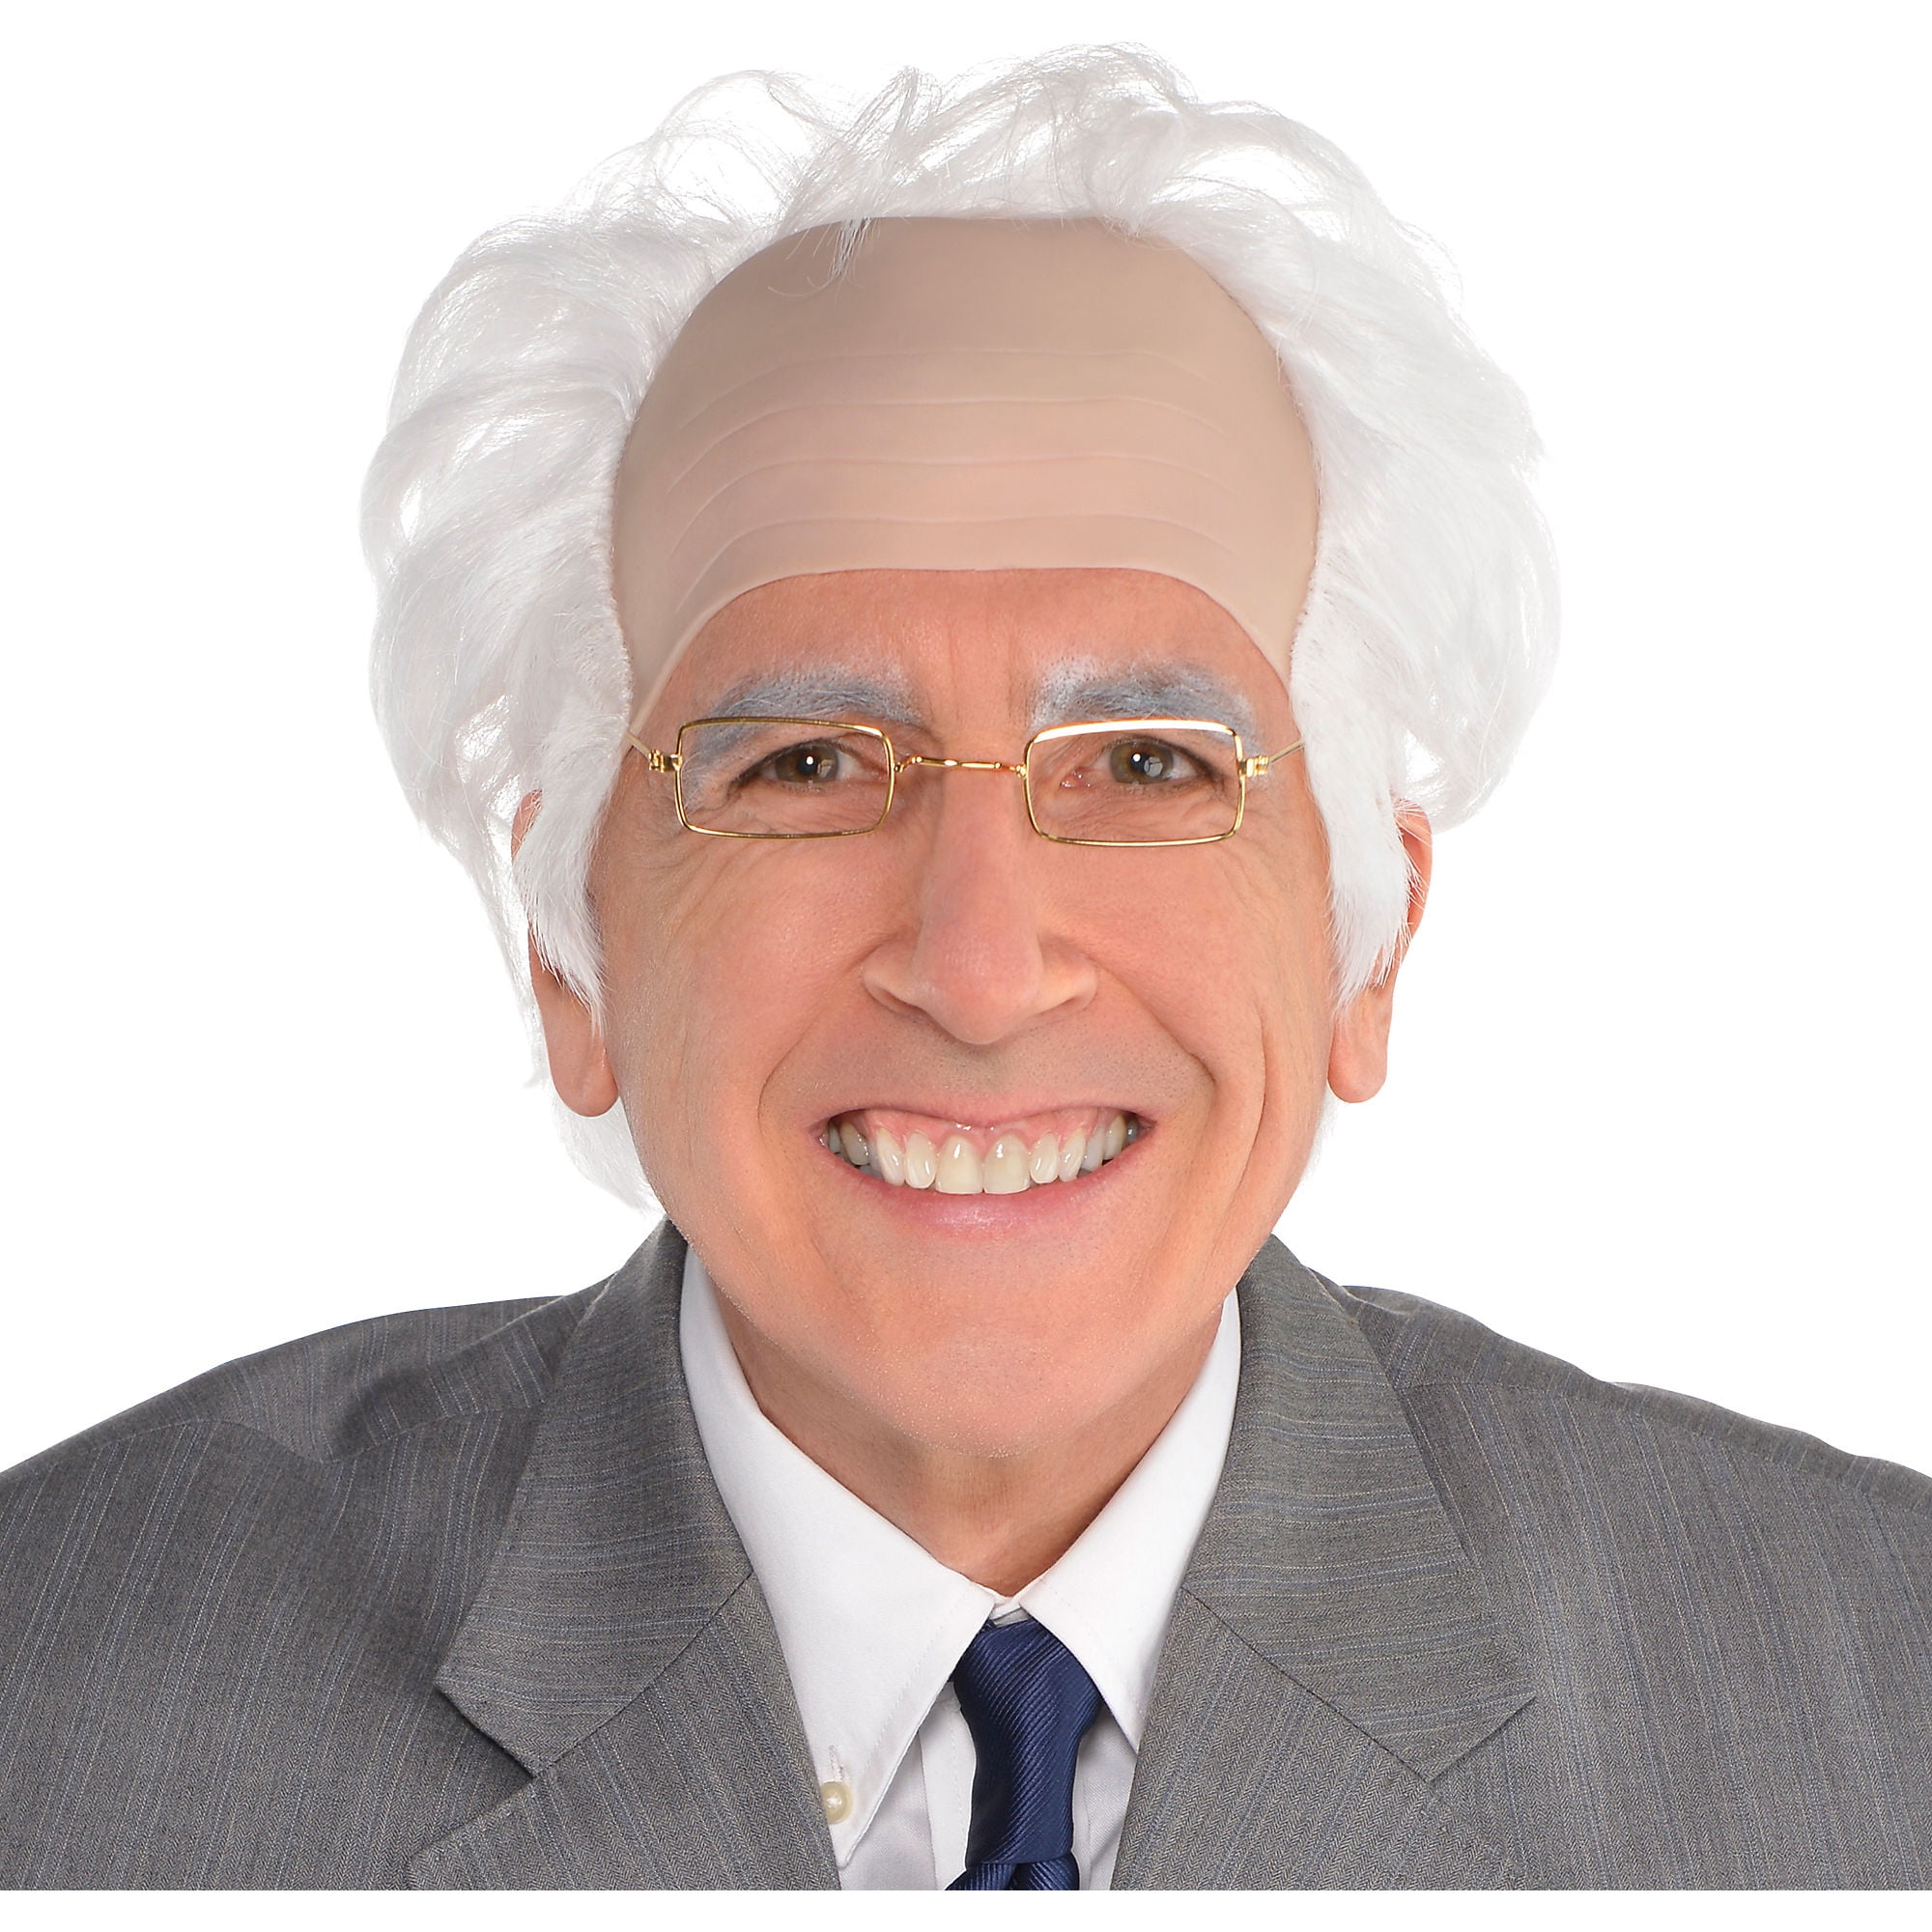 W858 Child Bald Grandpa Costume Wig Hair Grey Einstein Old Man 100 Day Book Week 